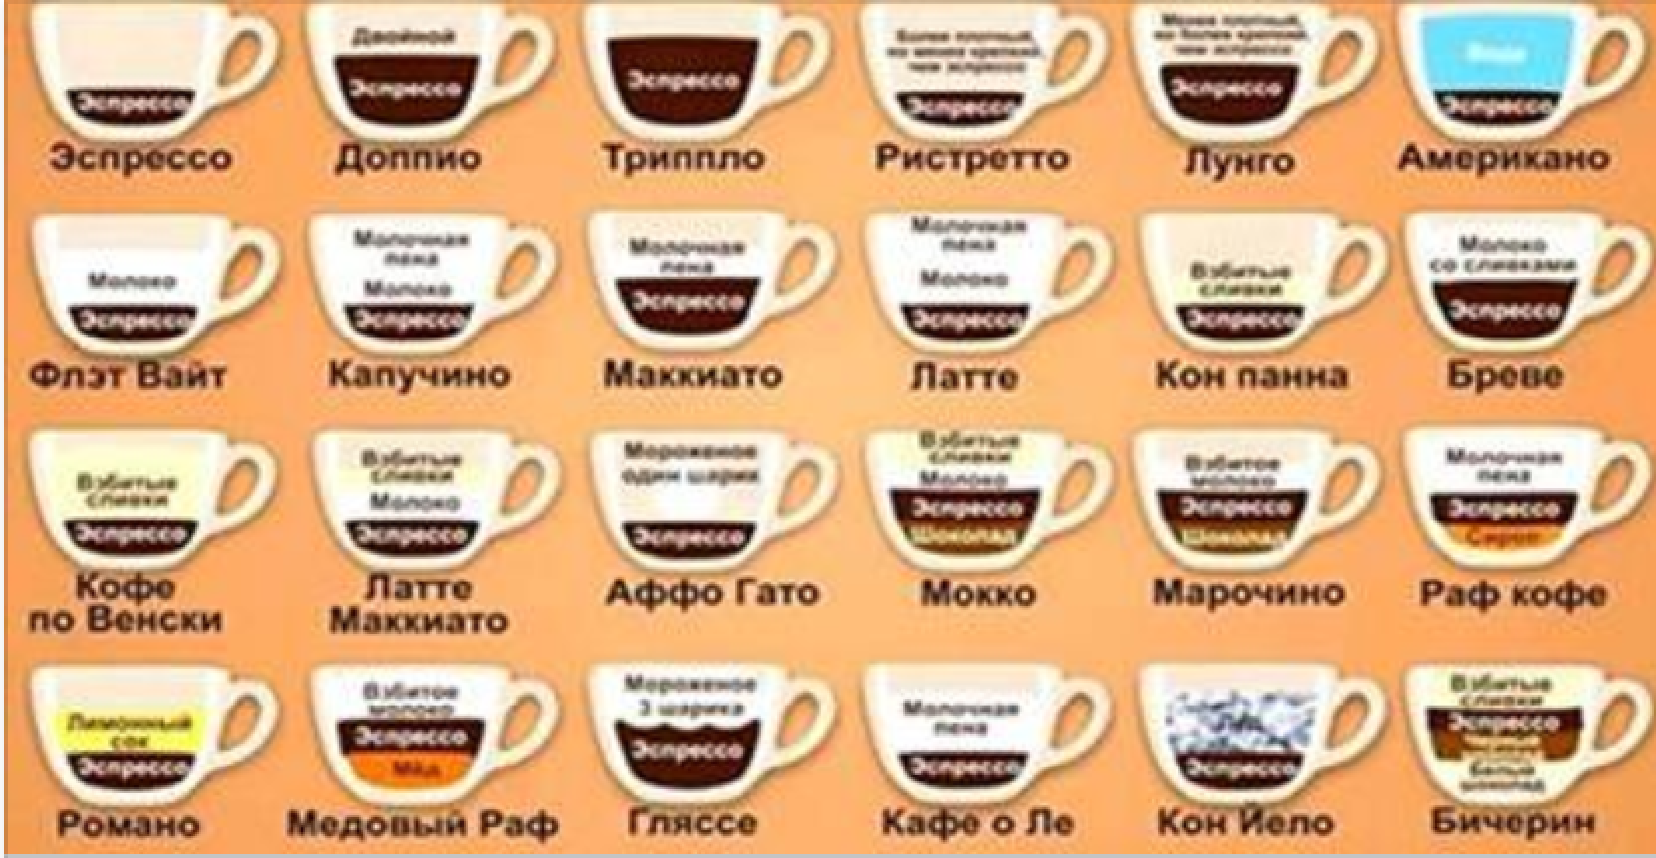 кофейная гамма названия кофейных